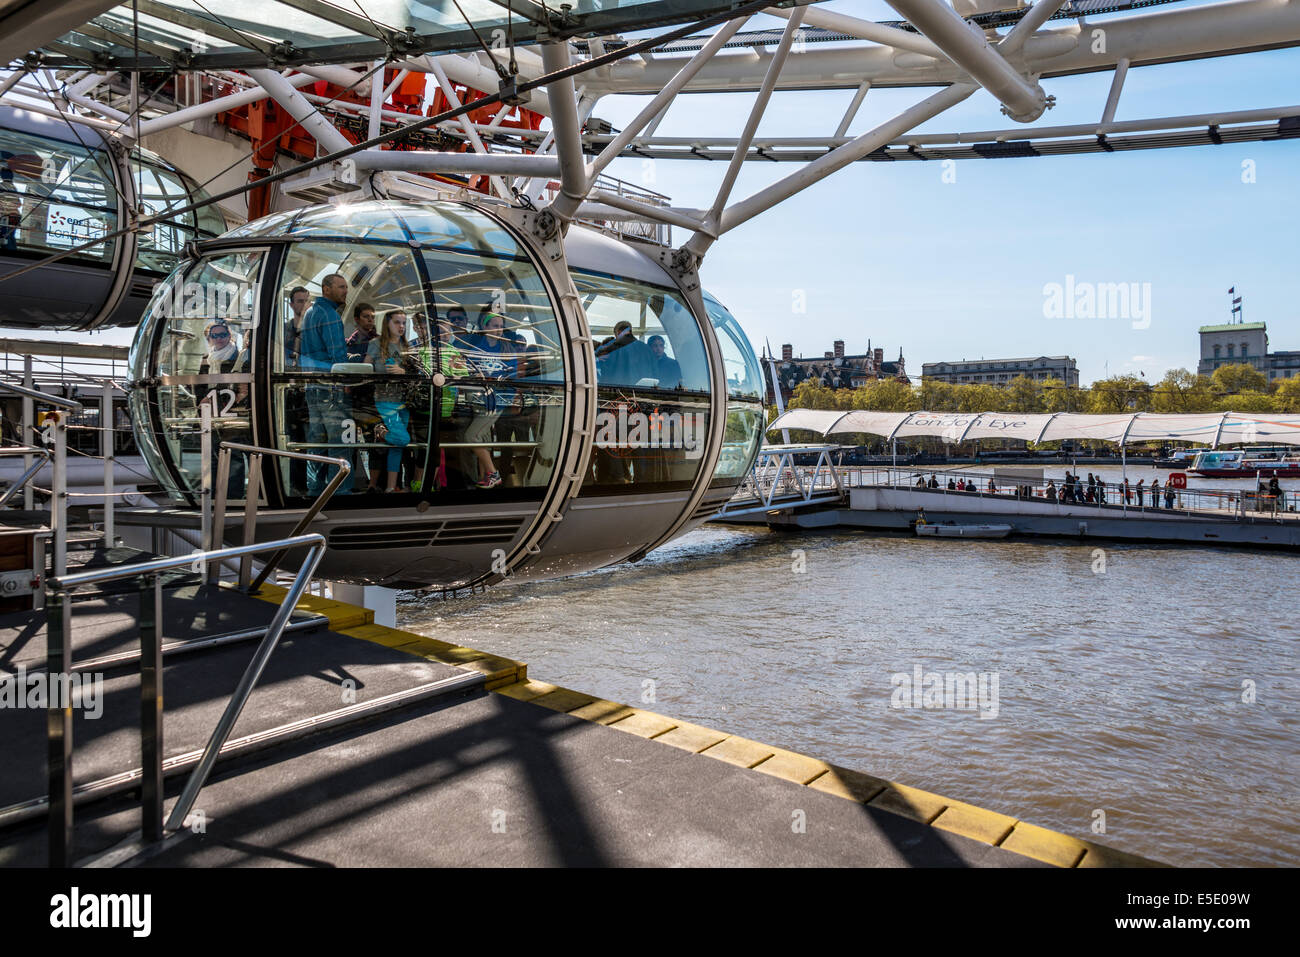 Les passagers se terminant leur voyage sur le London Eye, une grande roue sur la rive sud de la Tamise à Londres Banque D'Images